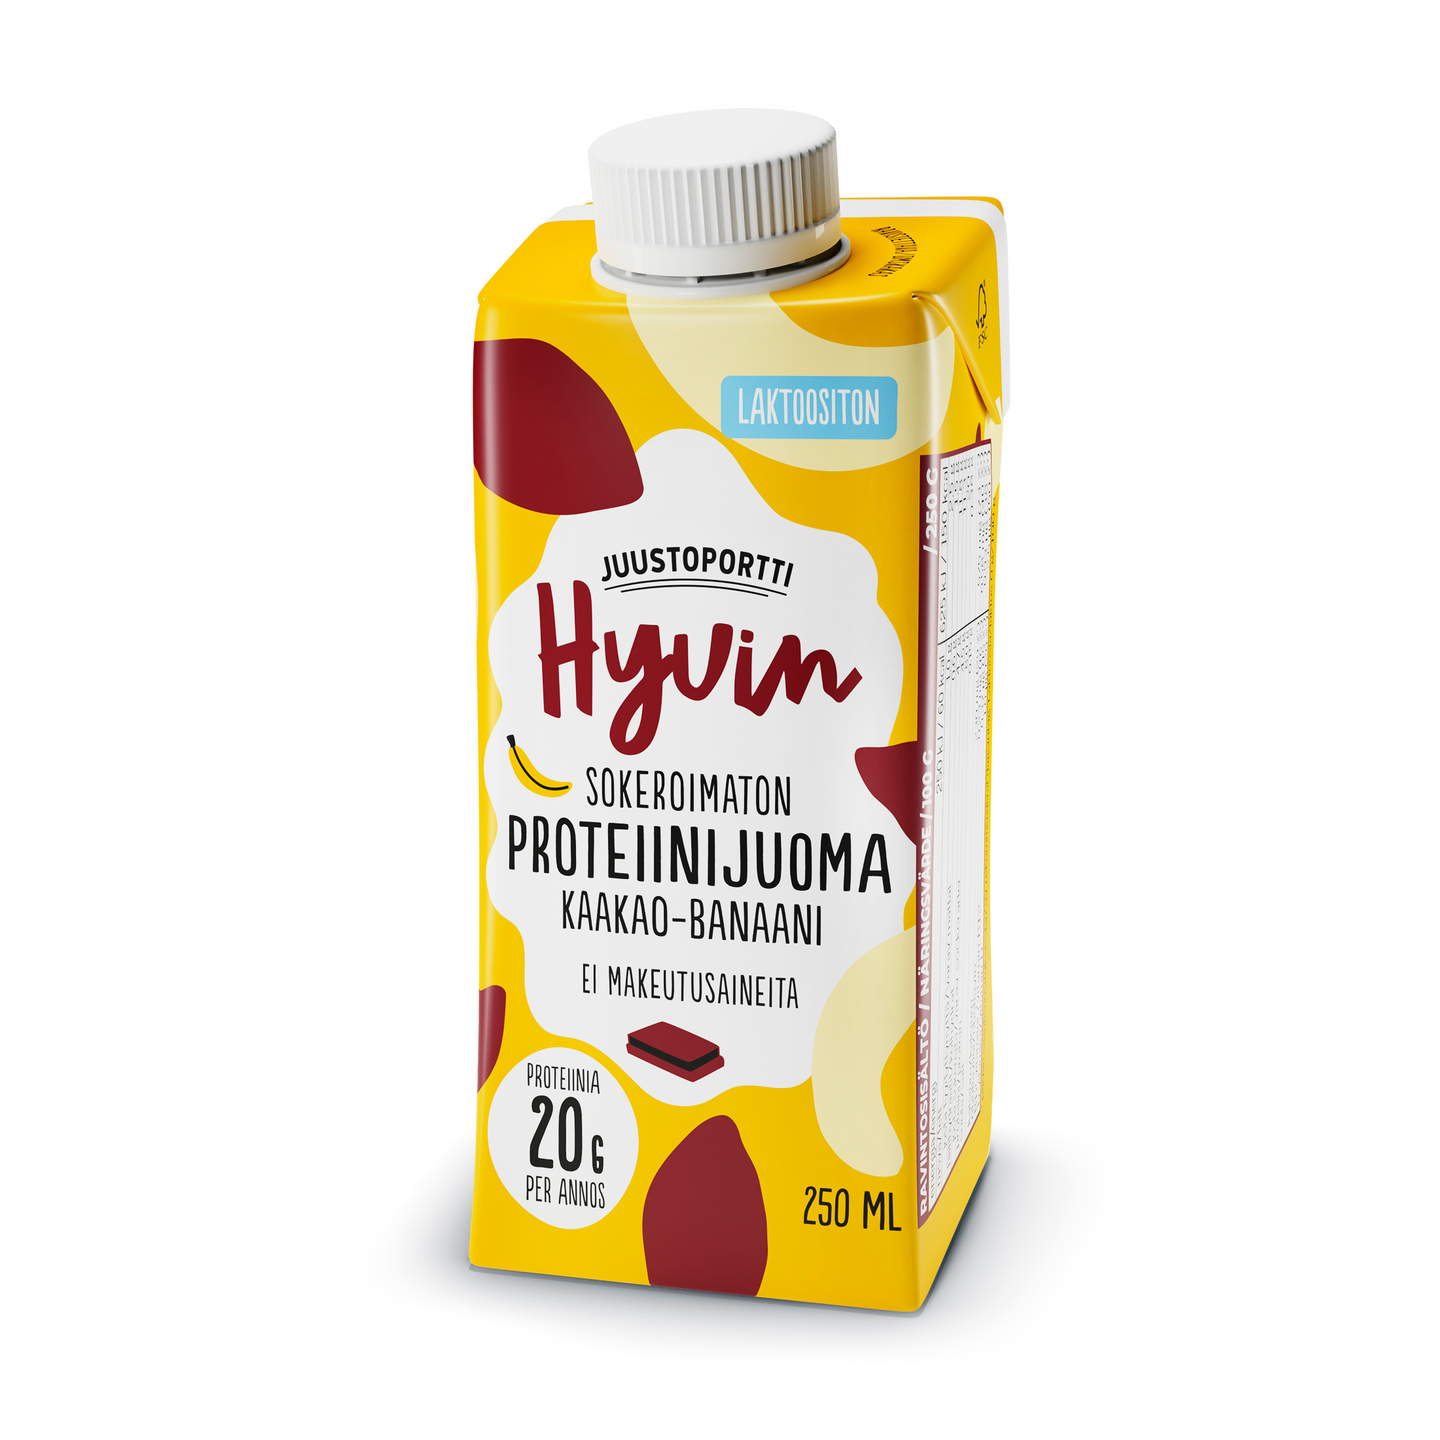 Juustoportti Hyvin sokeroimaton proteiinijuoma 250ml kaakao-banaani laktoositon